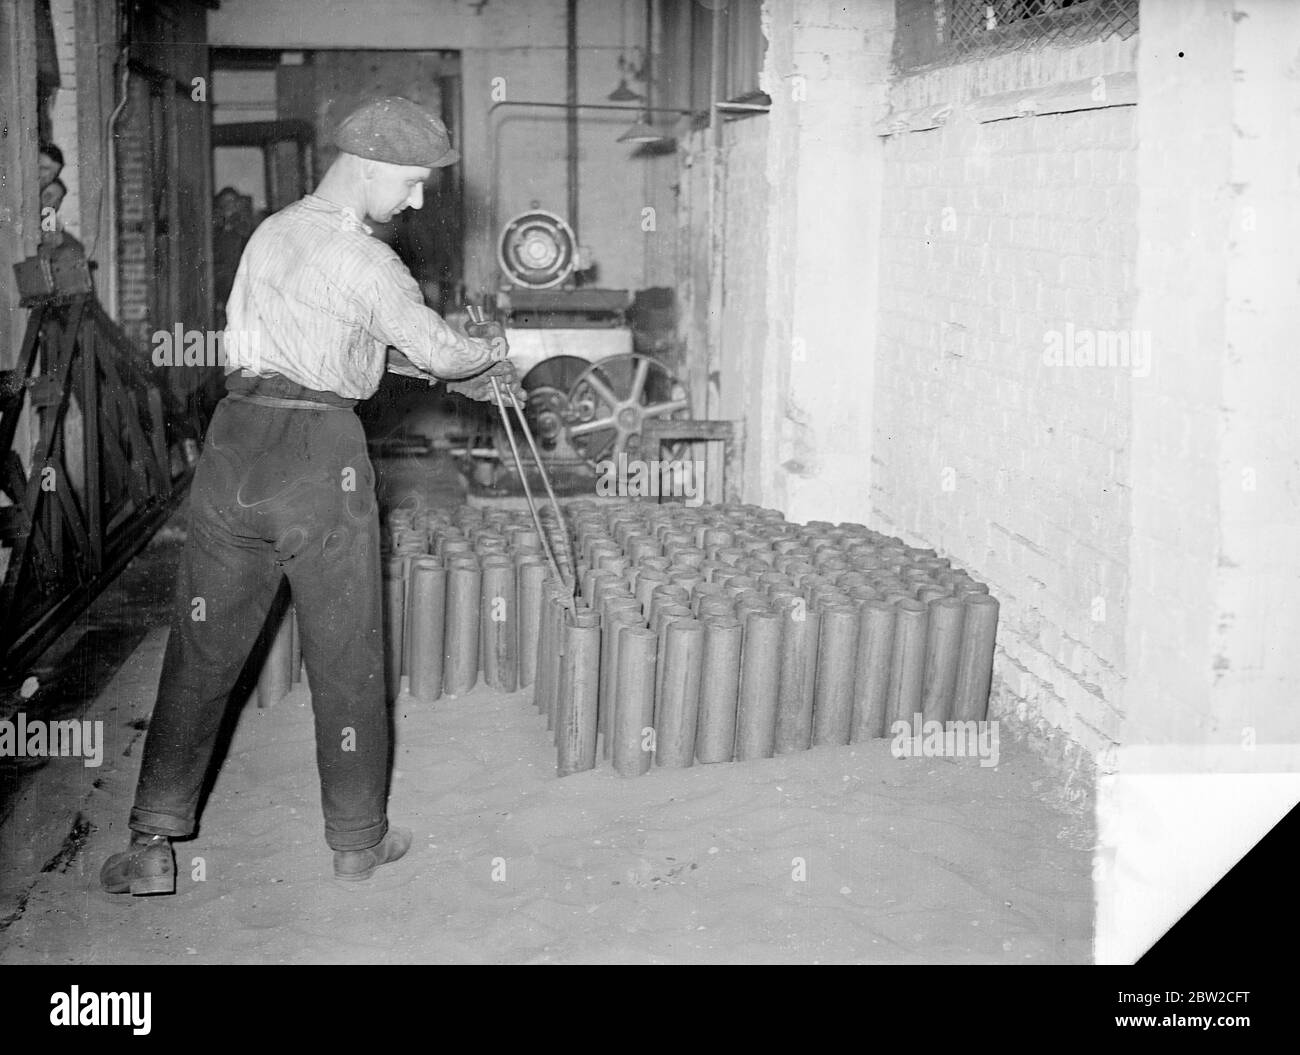 Arbeiter, die rote heiße geschmiedete Muscheln in Sand in einer britischen Muschelfabrik - einer der größten Europas - irgendwo in England platzieren, wo Männer Tag und Nacht arbeiten, um Aufträge für das Versorgungsministerium zu erfüllen. 18. November 1939 Stockfoto